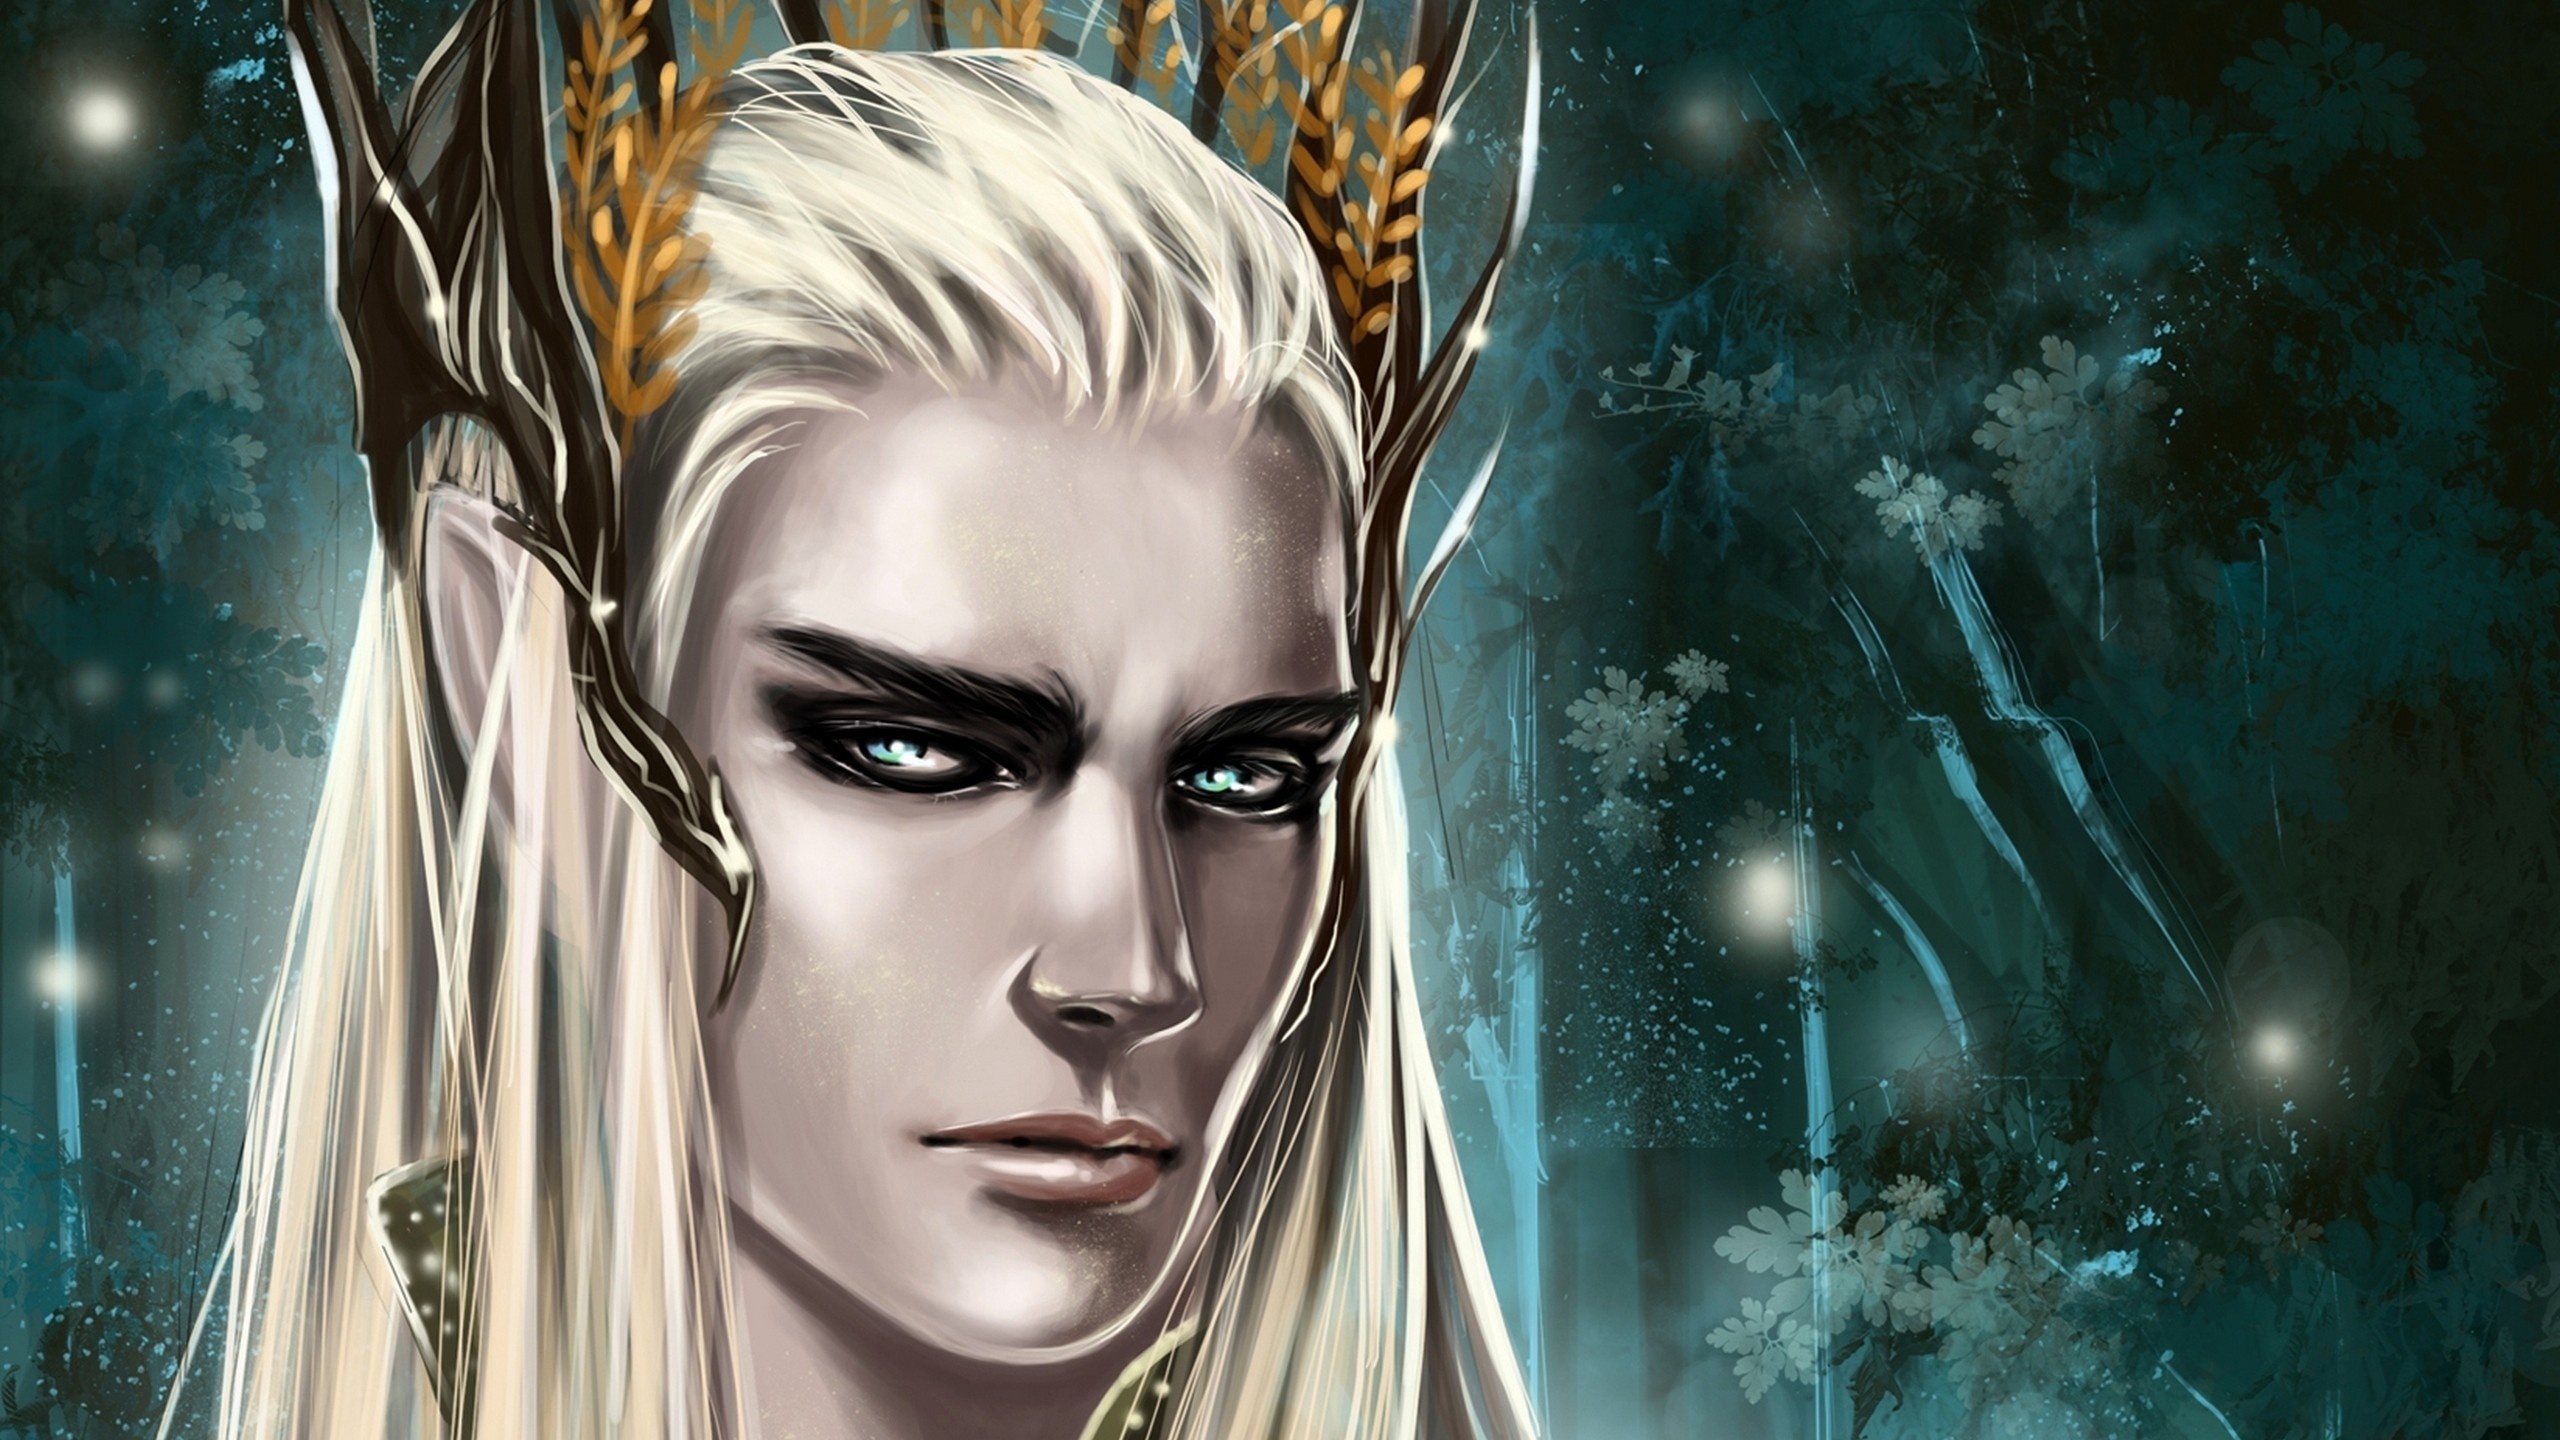 Silvan Elves, Galadriel wallpaper, Ethereal beauty, Elven queen, 2560x1440 HD Desktop